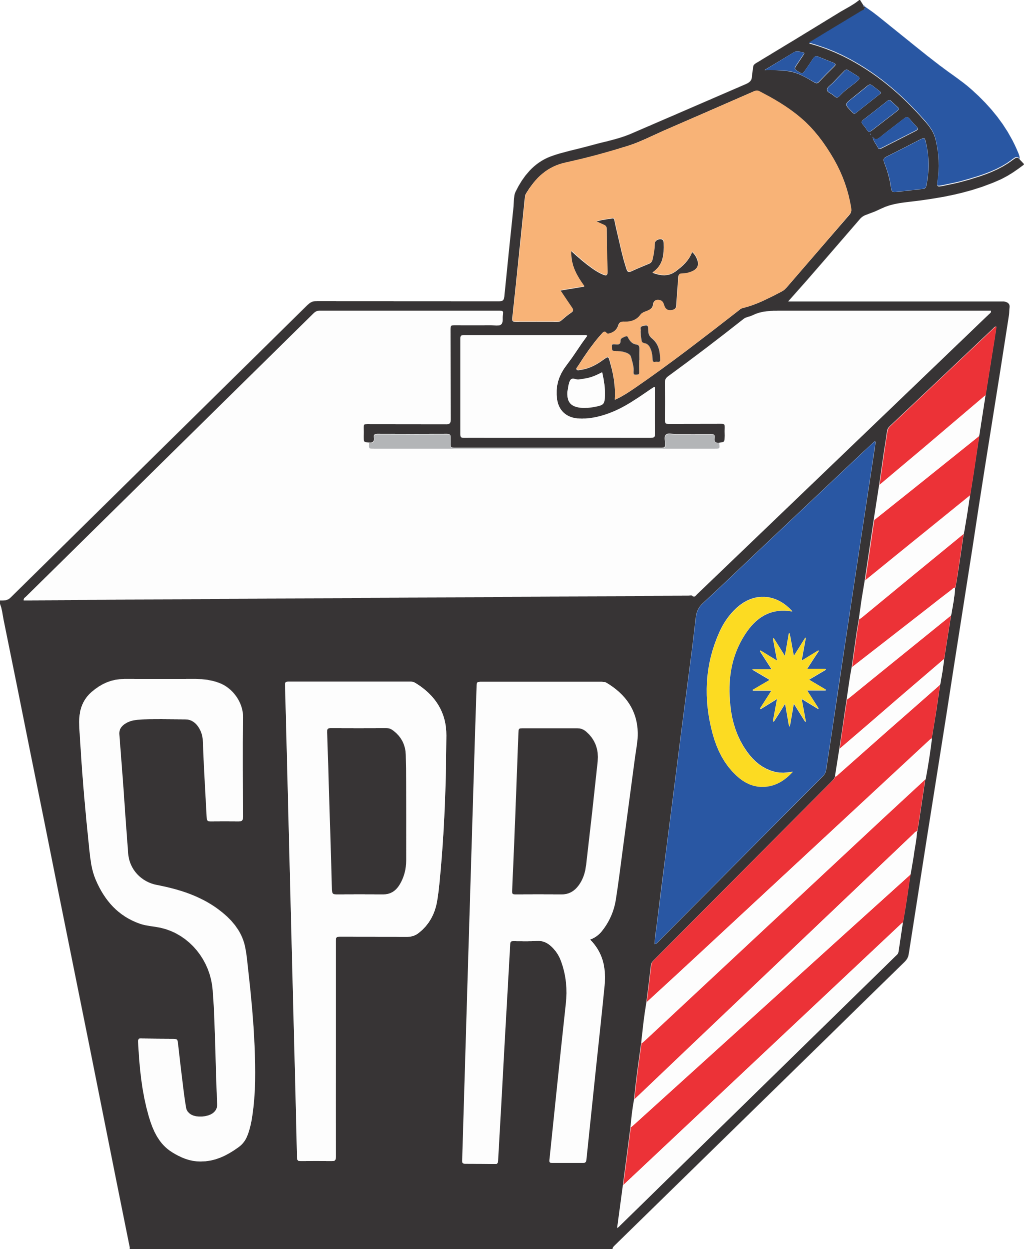 Pejabat Pilihan Raya Negeri Sembilan